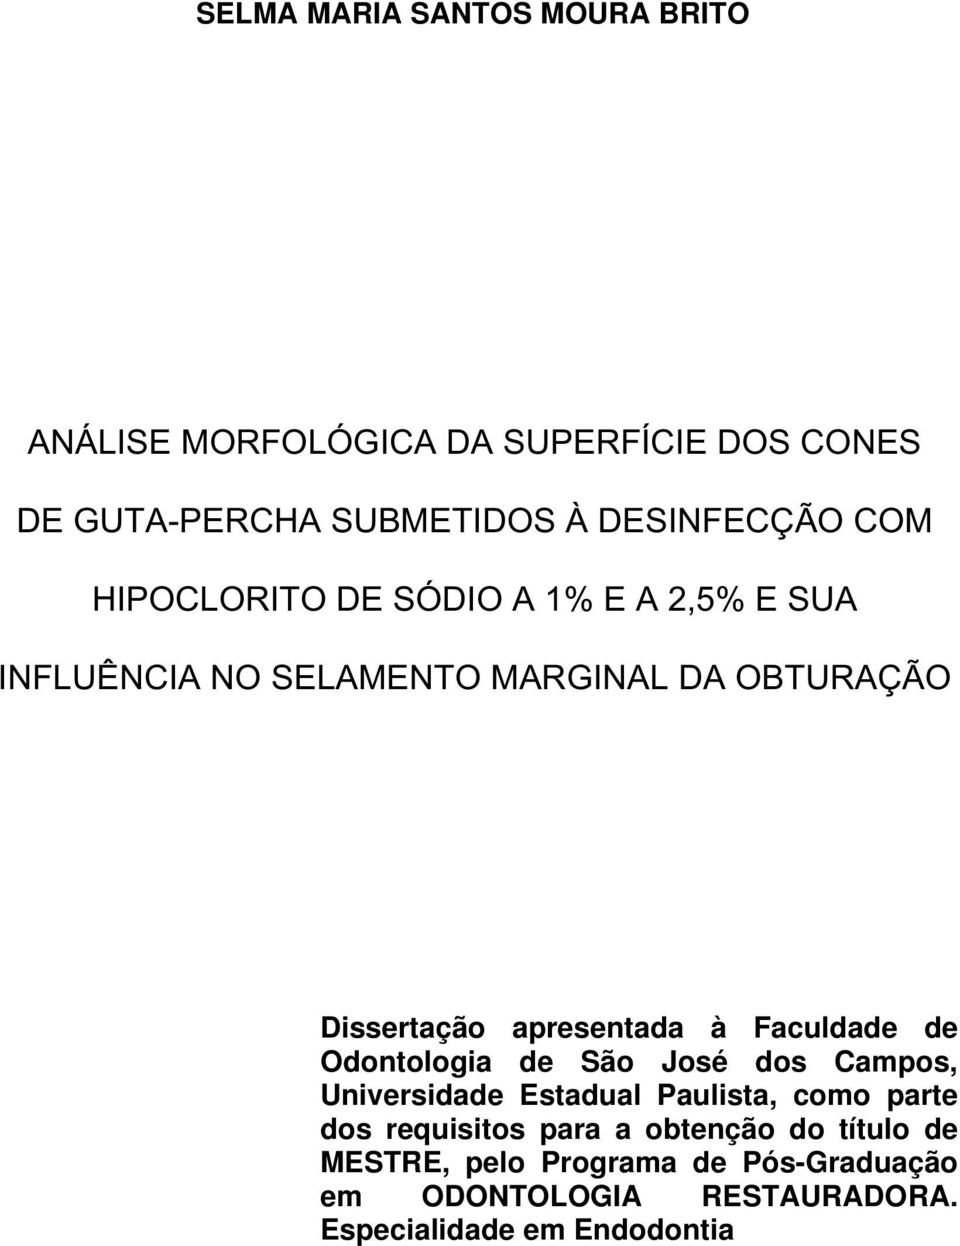 à Faculdade de Odontologia de São José dos Campos, Universidade Estadual Paulista, como parte dos requisitos para a